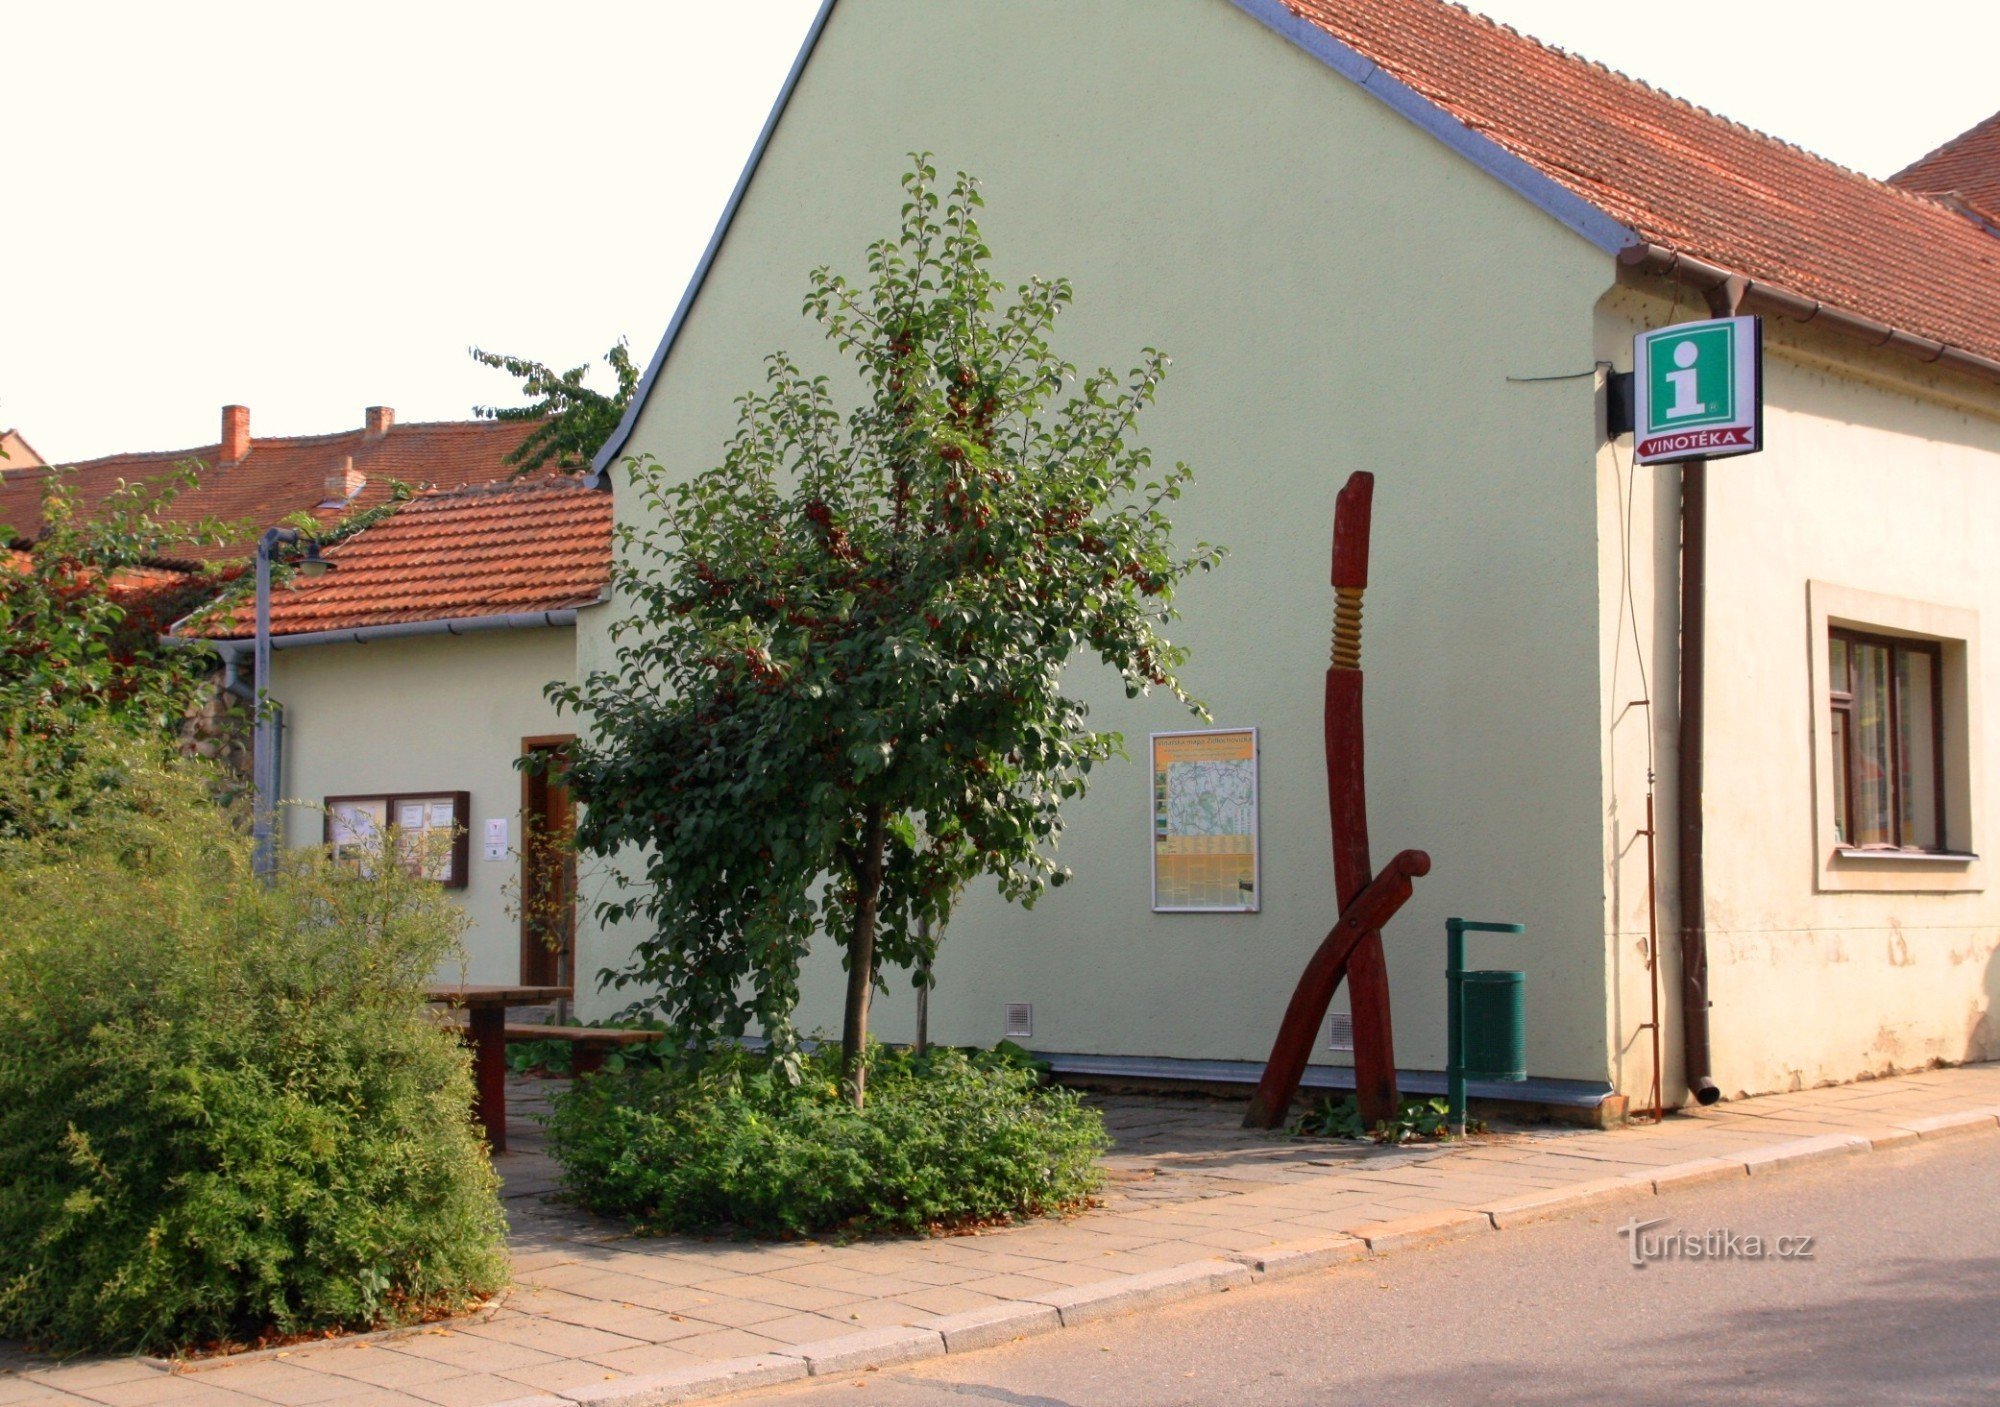 Židlochovice - centro regional de información y turismo y tienda de vinos